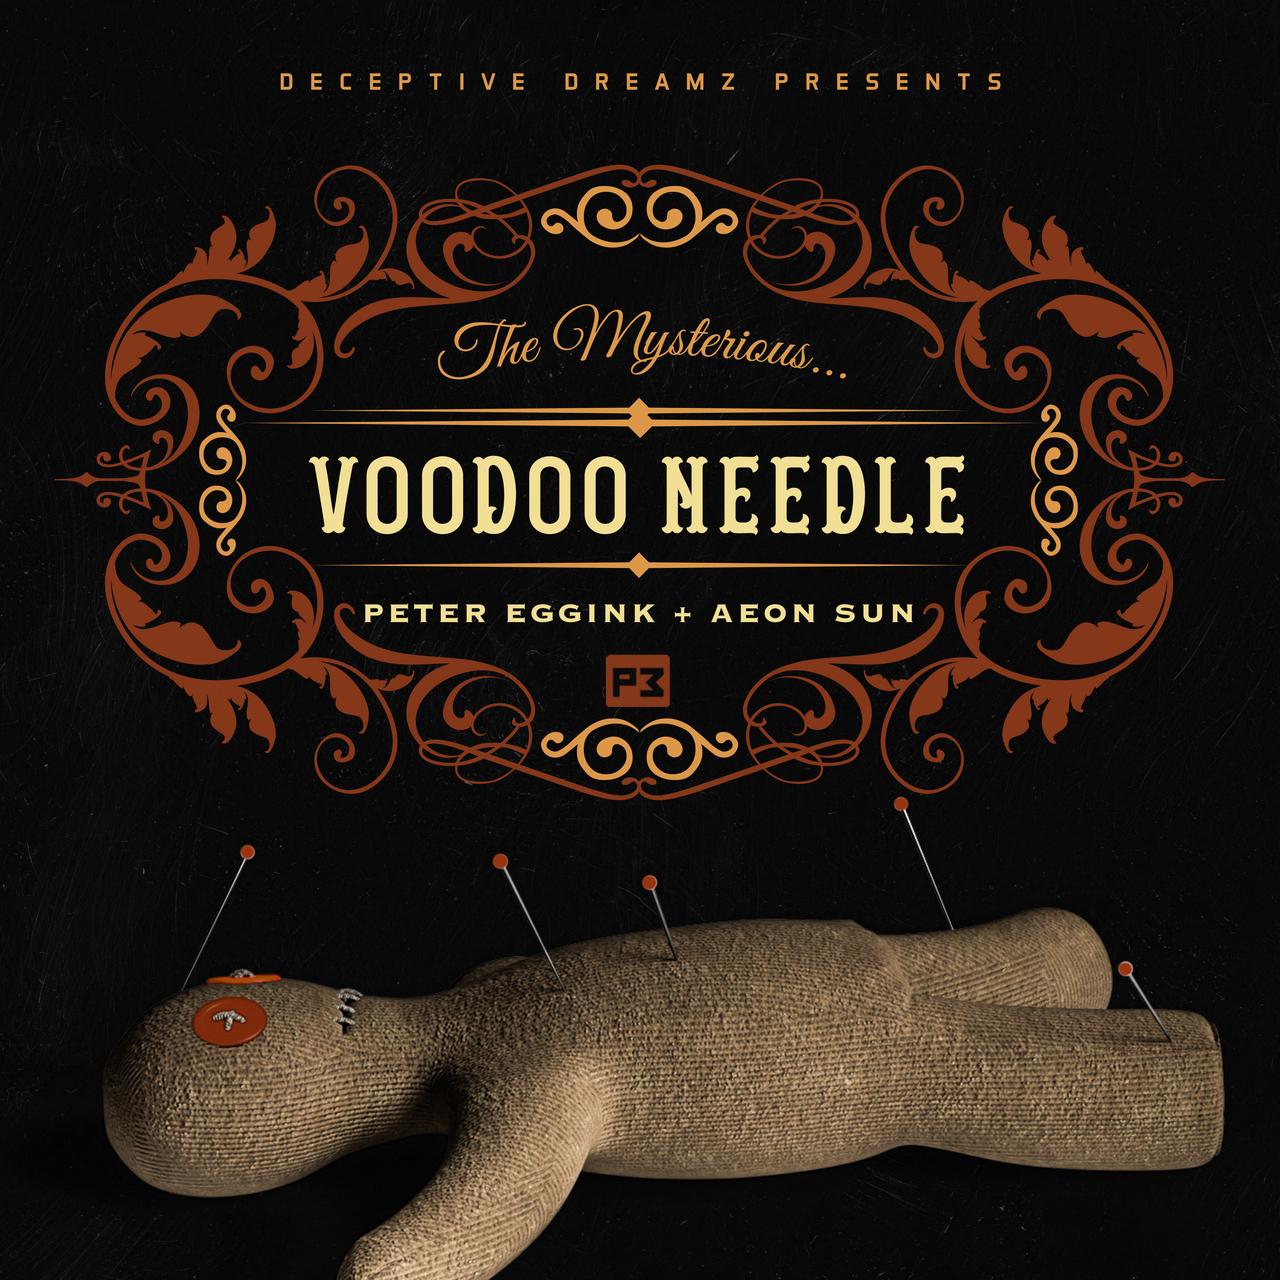 Voodoo Needle By Peter Eggink Aeon Sun クーポンコード マジックショップ ストリートマジシャン ストリートマジック専門手品通販